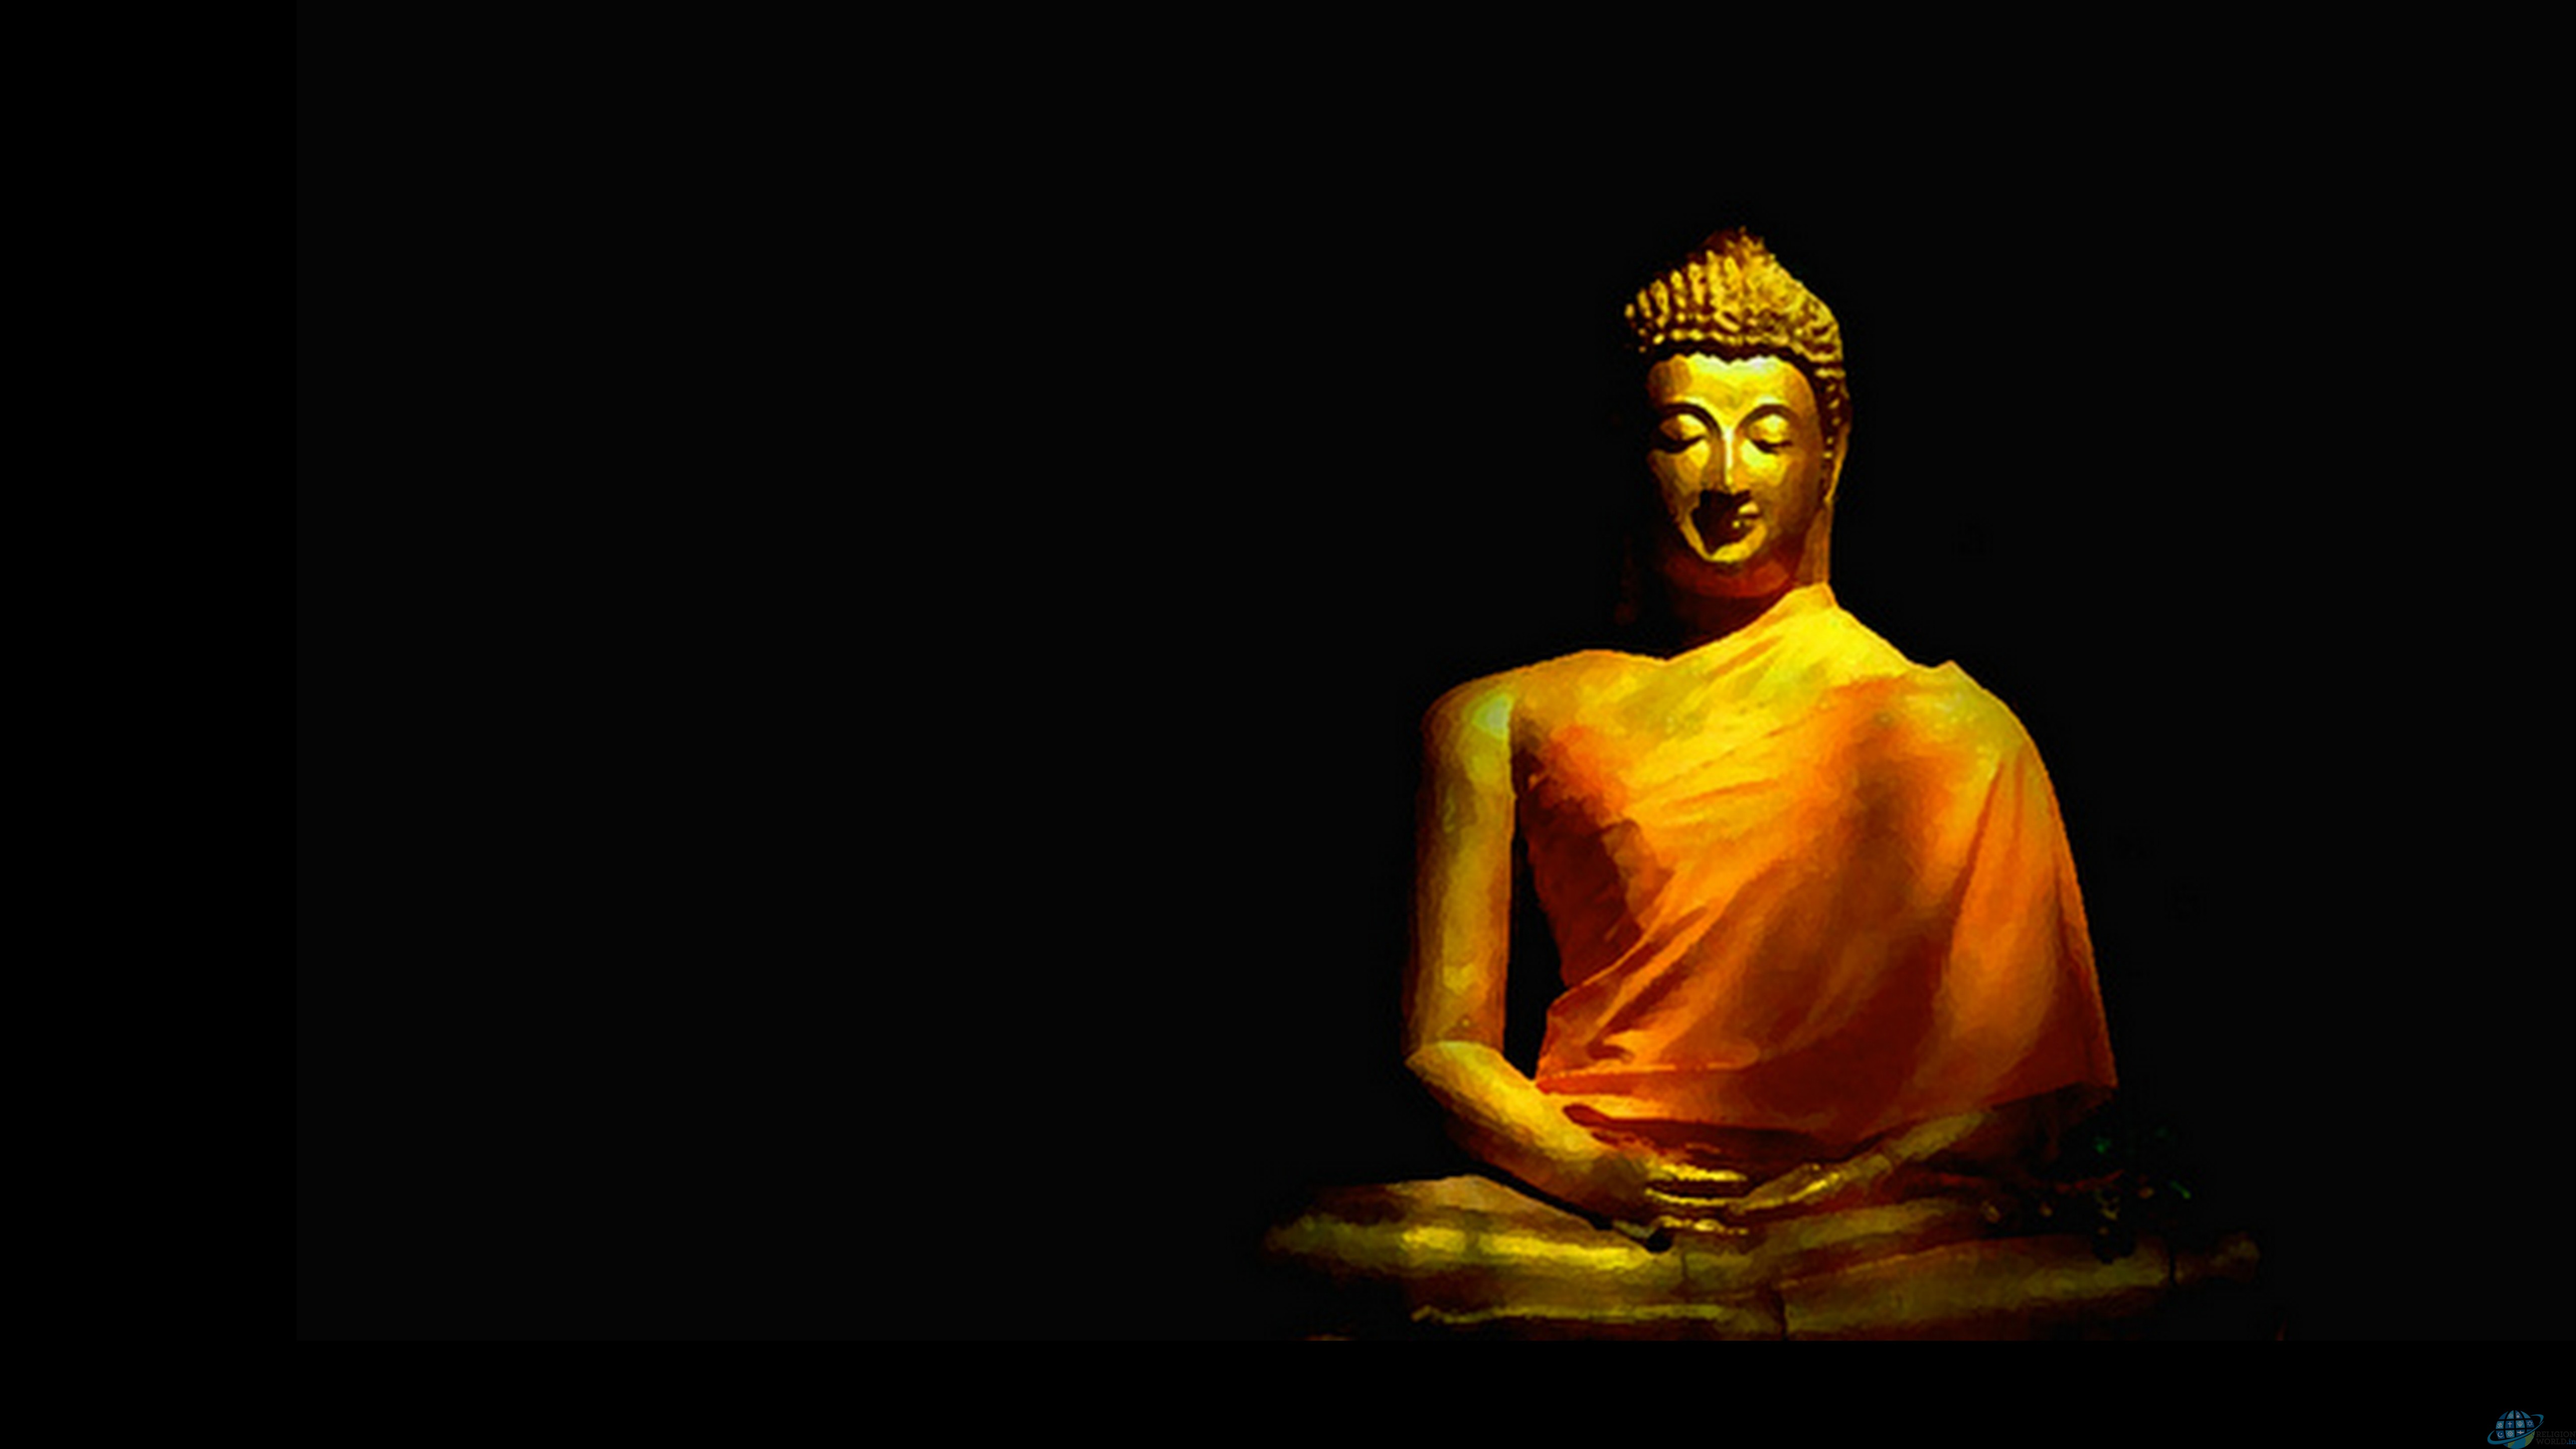 The Buddha and YOU